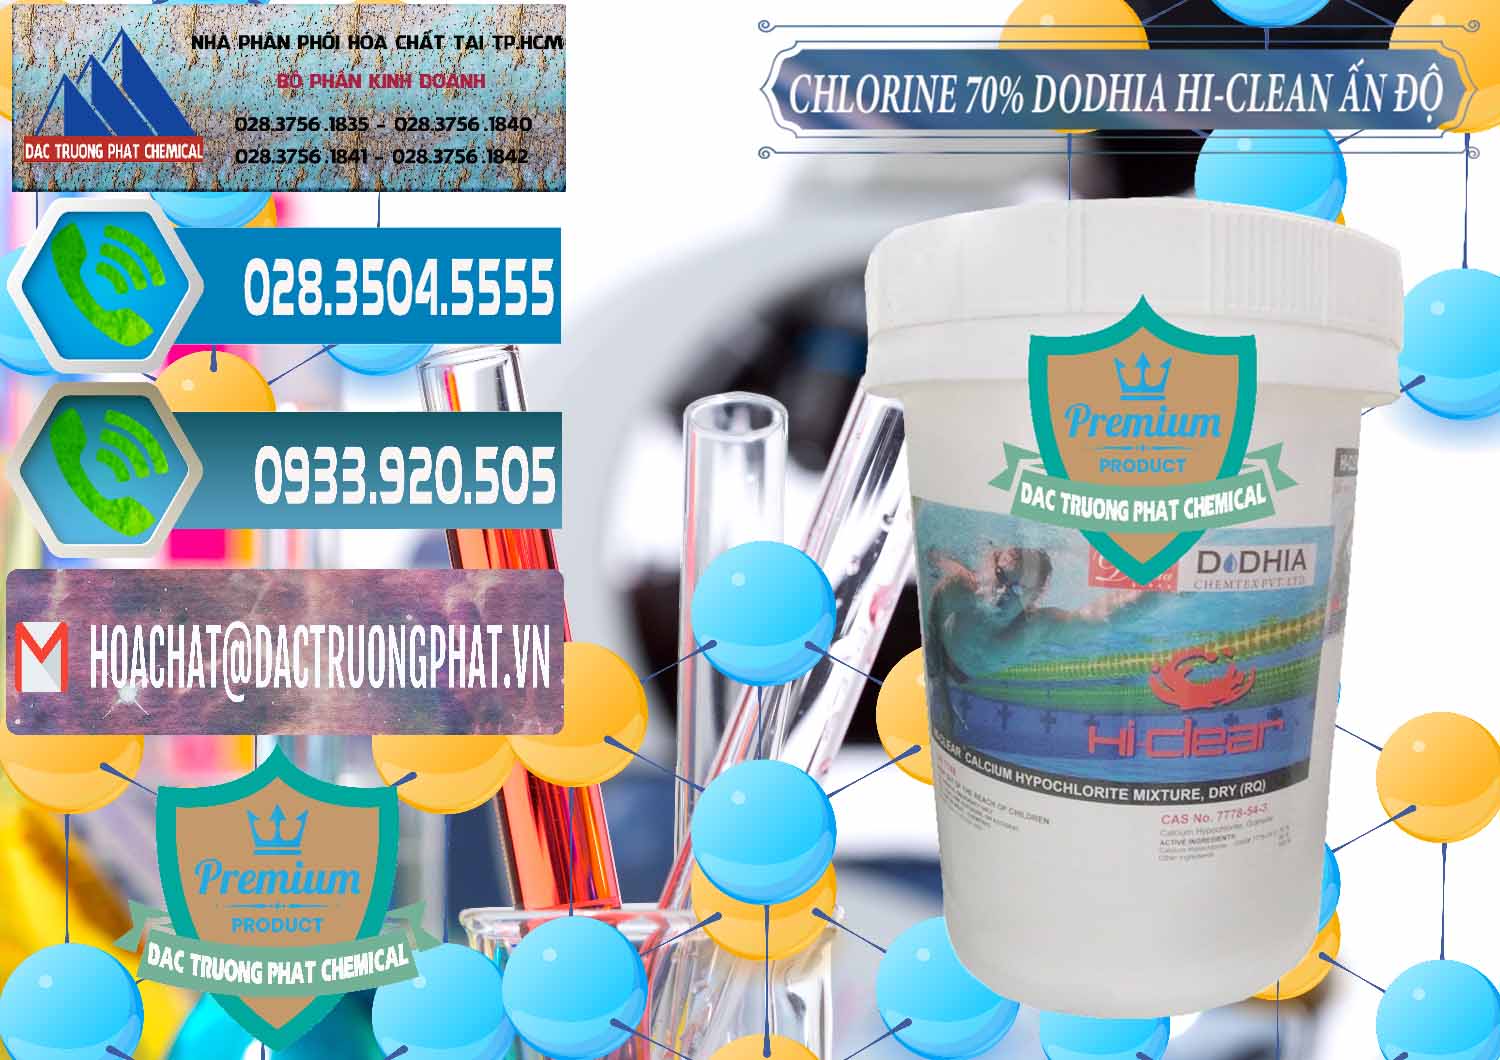 Công ty bán và cung ứng Chlorine – Clorin 70% Dodhia Hi-Clean Ấn Độ India - 0214 - Đơn vị chuyên kinh doanh & phân phối hóa chất tại TP.HCM - congtyhoachat.net